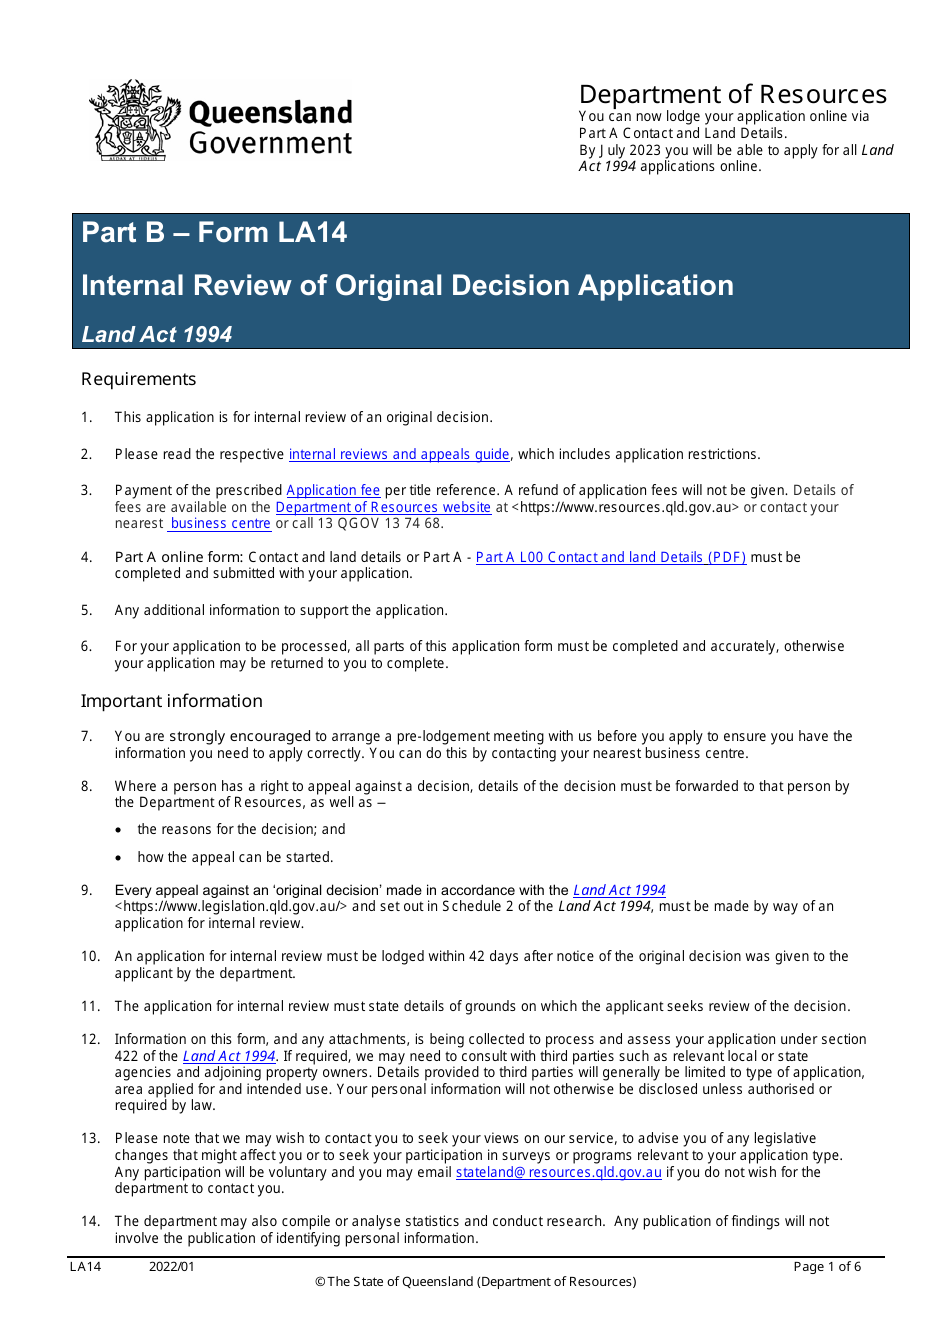 Form LA14 Part B Internal Review of Original Decision Application - Queensland, Australia, Page 1